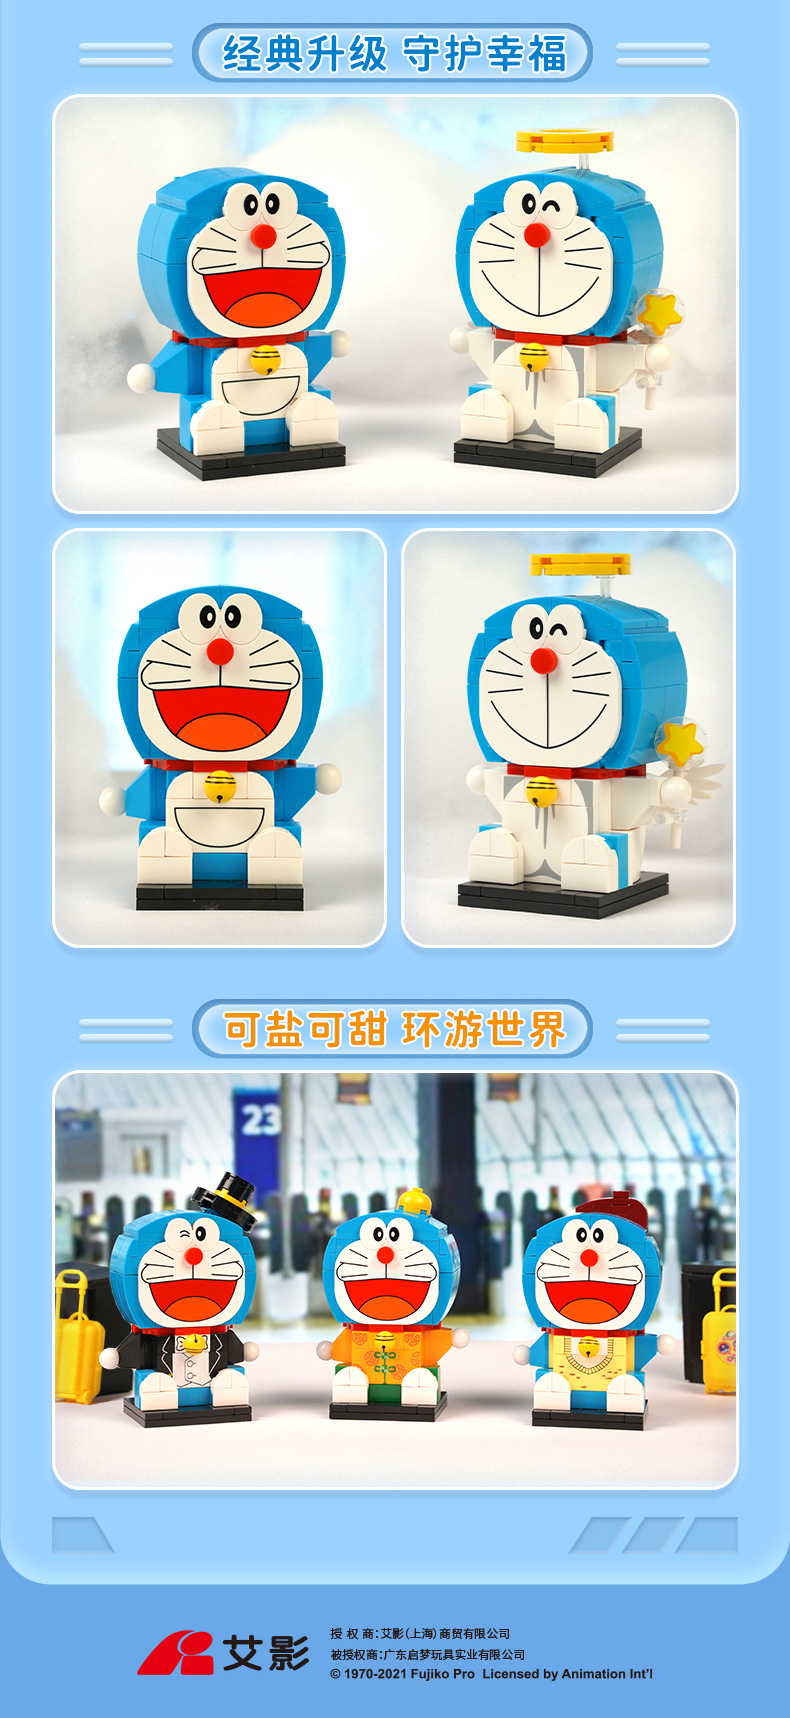 Keeppley K20403 Doraemon, Dios de la riqueza, juego de juguetes con bloques de construcción